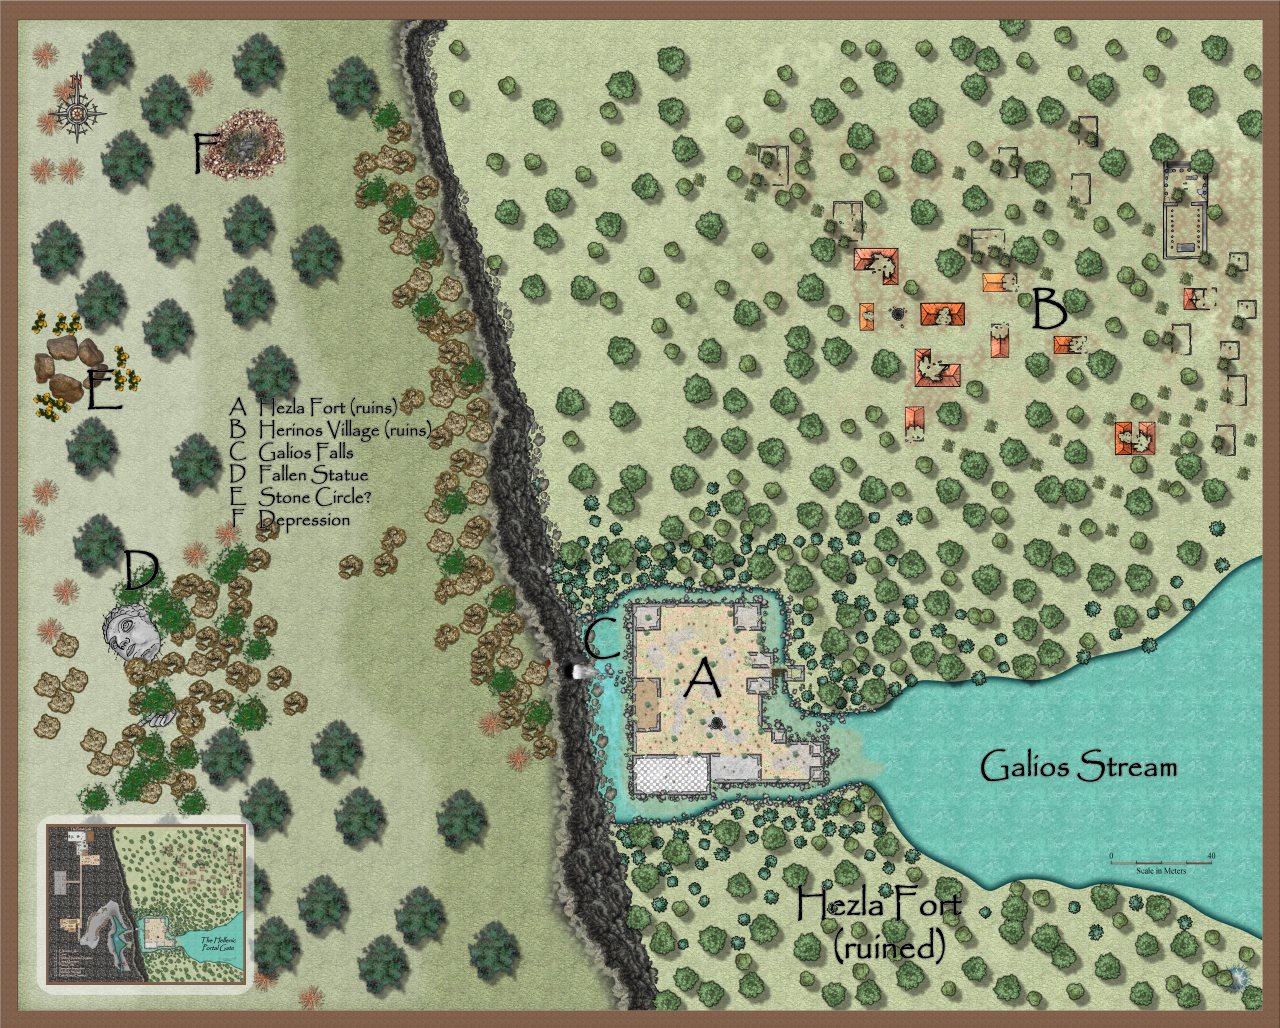 Nibirum Map: hezla fort ruins by Quenten Walker